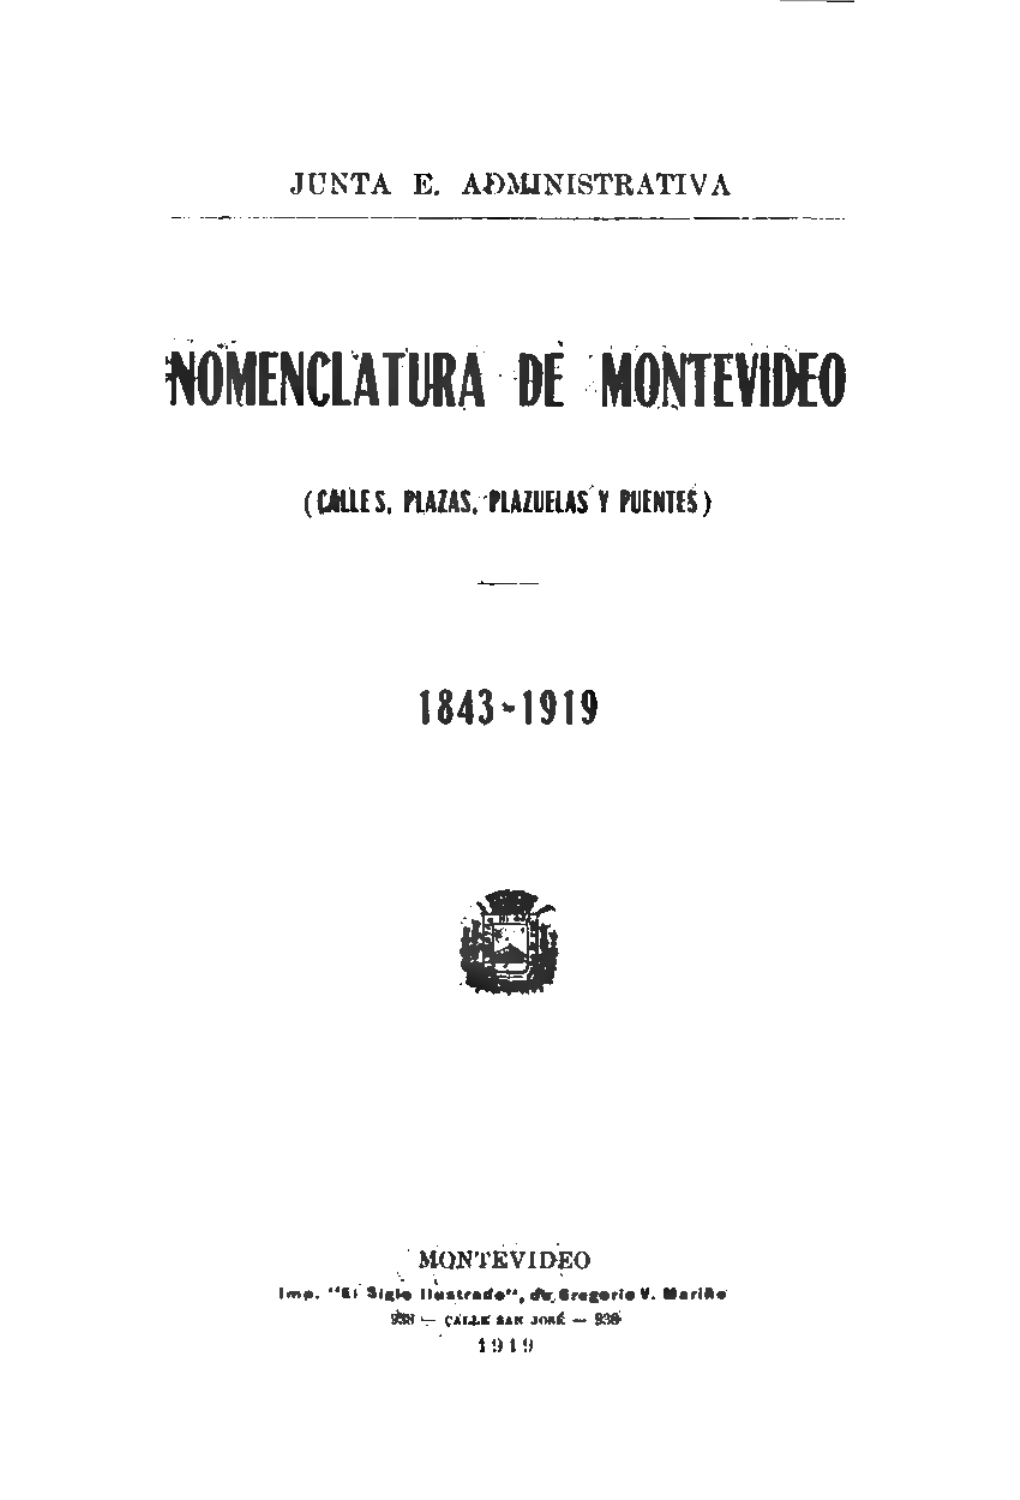 Nomenclatura Montevideo 1843